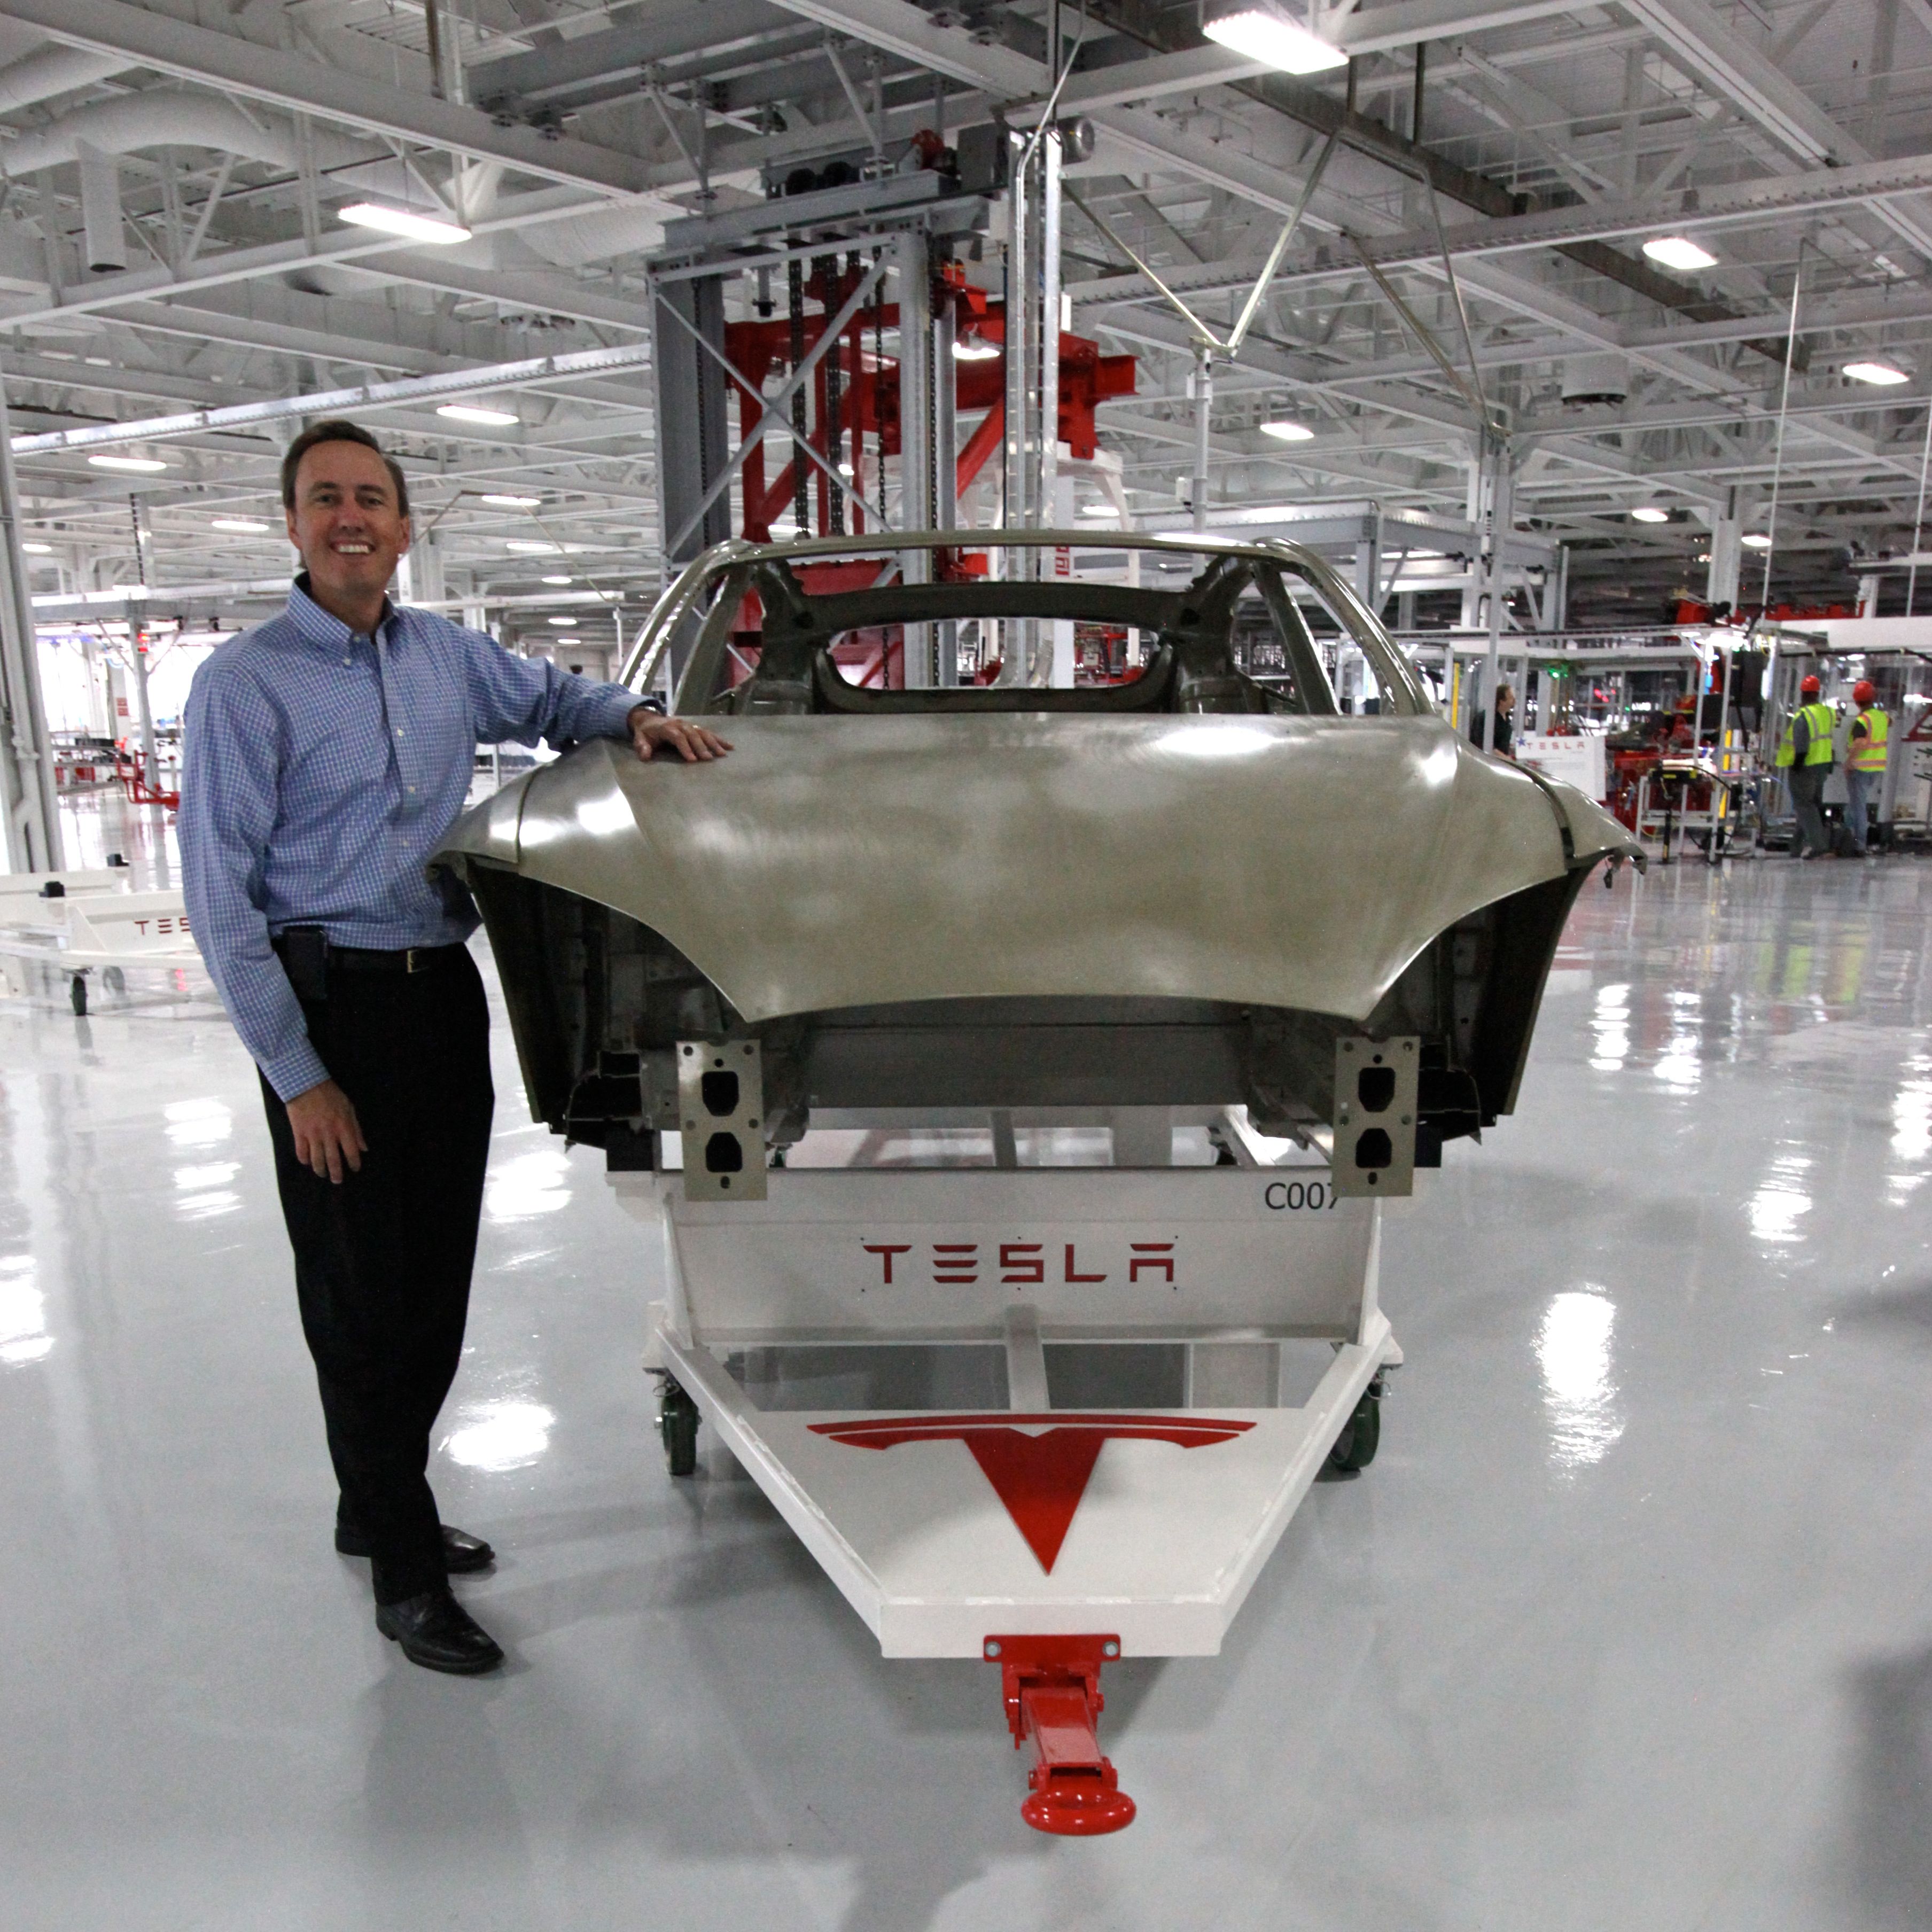 Tesla factory floor interior in front of car